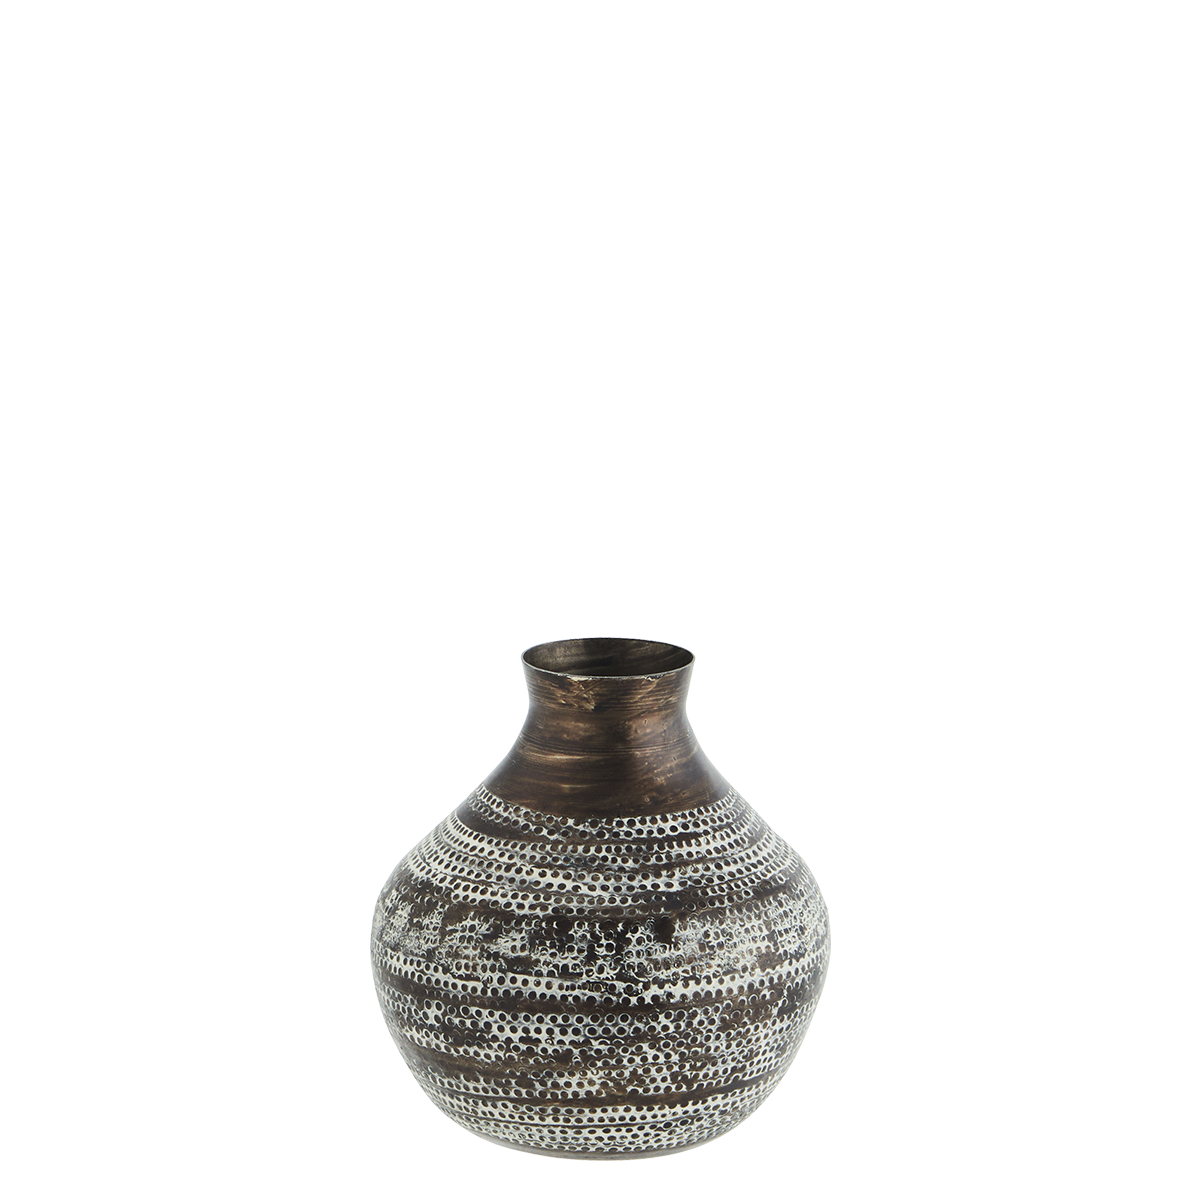 Hammered aluminum vase